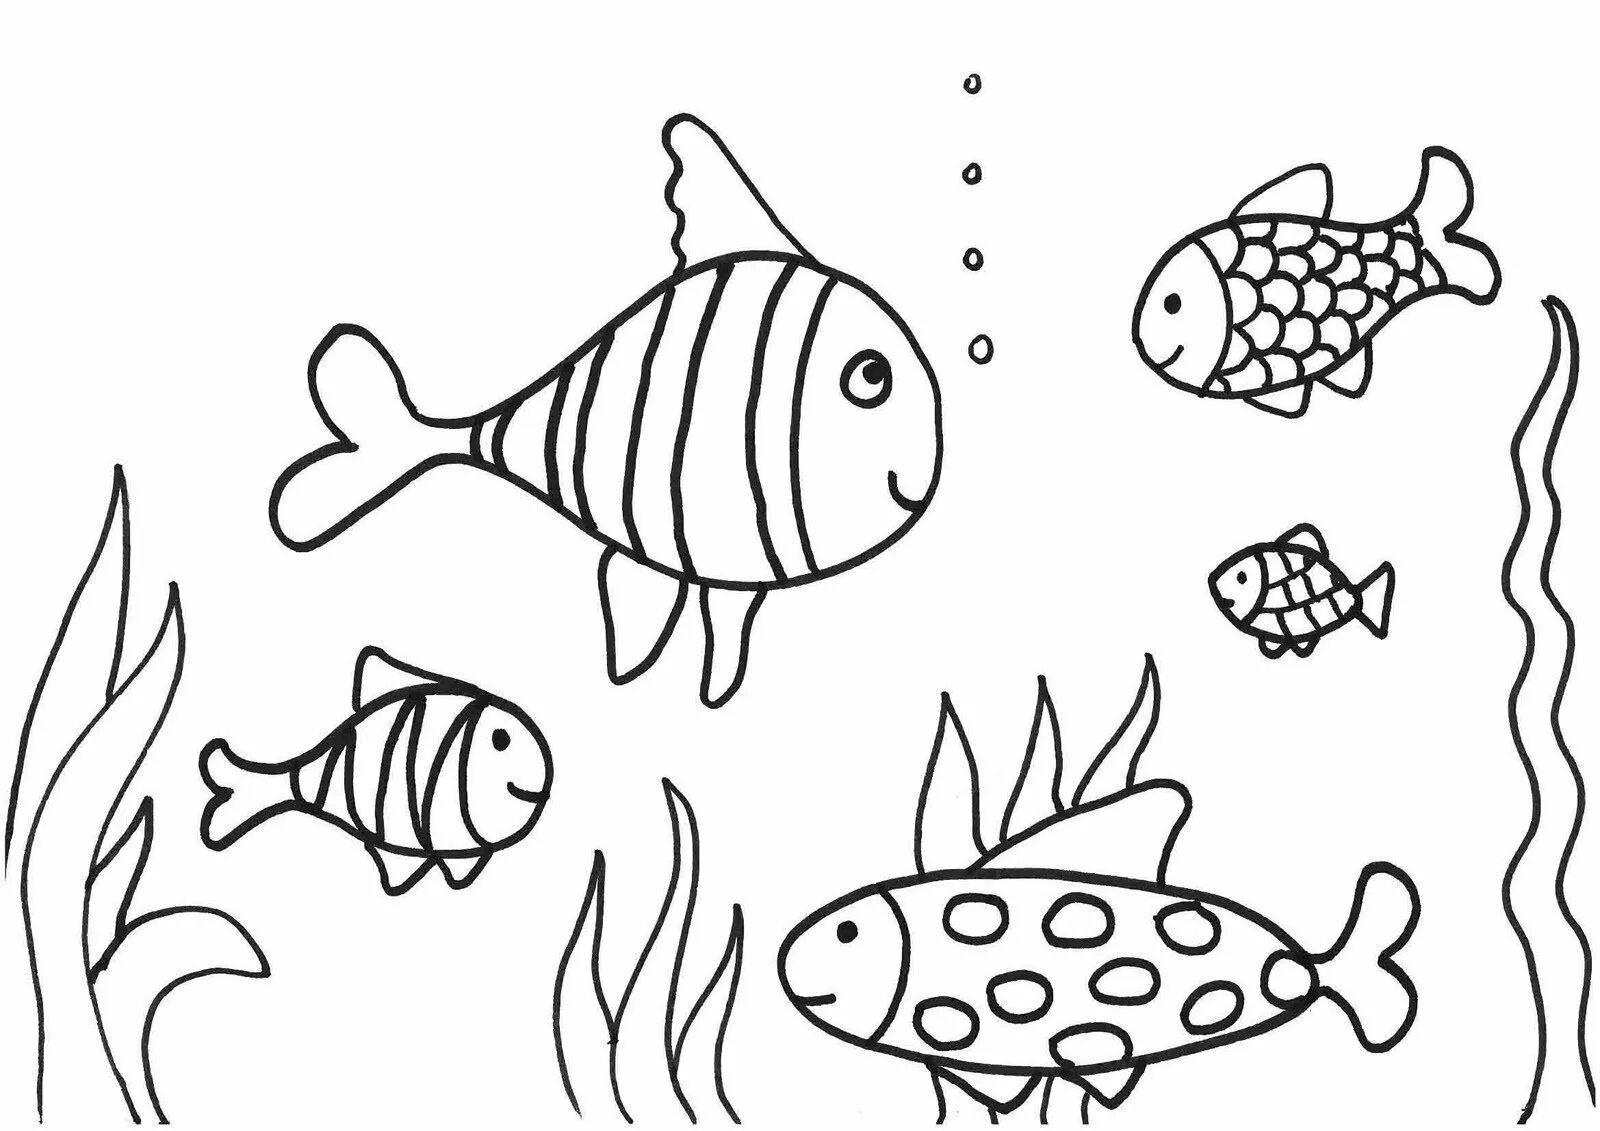 Раскраска рыбы для детей 7 лет. Раскраска рыбка. Рыбка для раскрашивания для детей. Рыбка раскраска для детей. Аквариумные рыбки раскраска для детей.